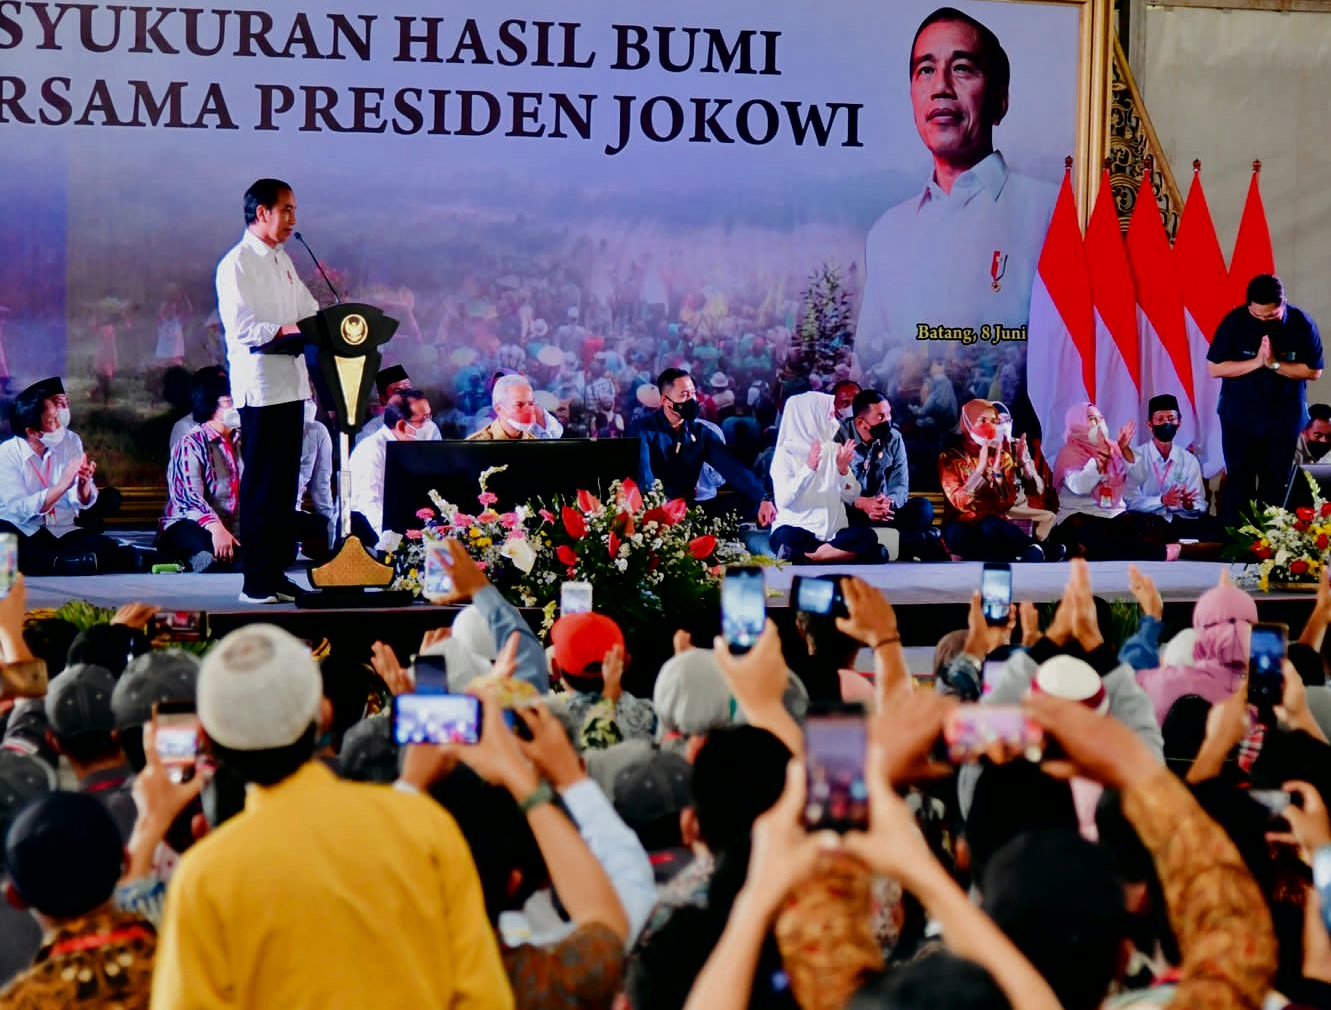 Presiden Jokowi saat mengahdi acara sedah buminyang digelar oleh gema perhutanan